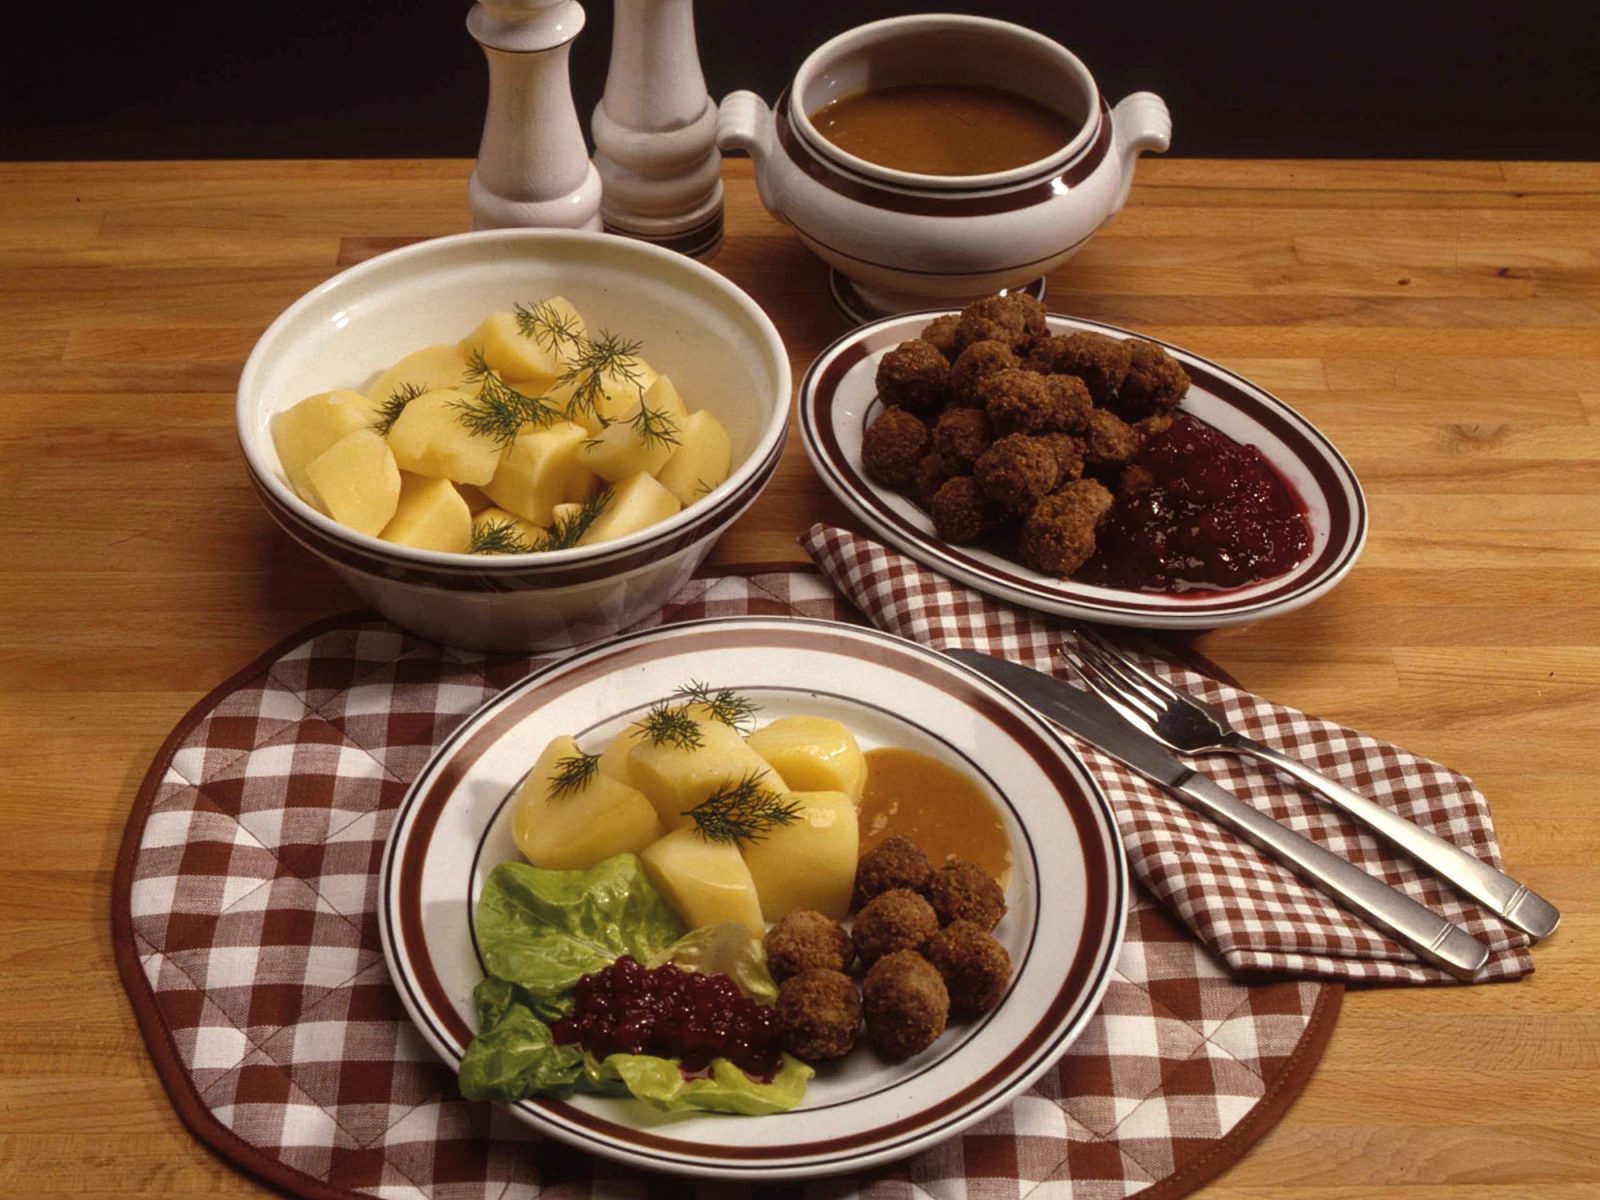 Plato y boles con albóndigas suecas, patatas cocidas, salsa marrón y mermelada de arándanos rojos.